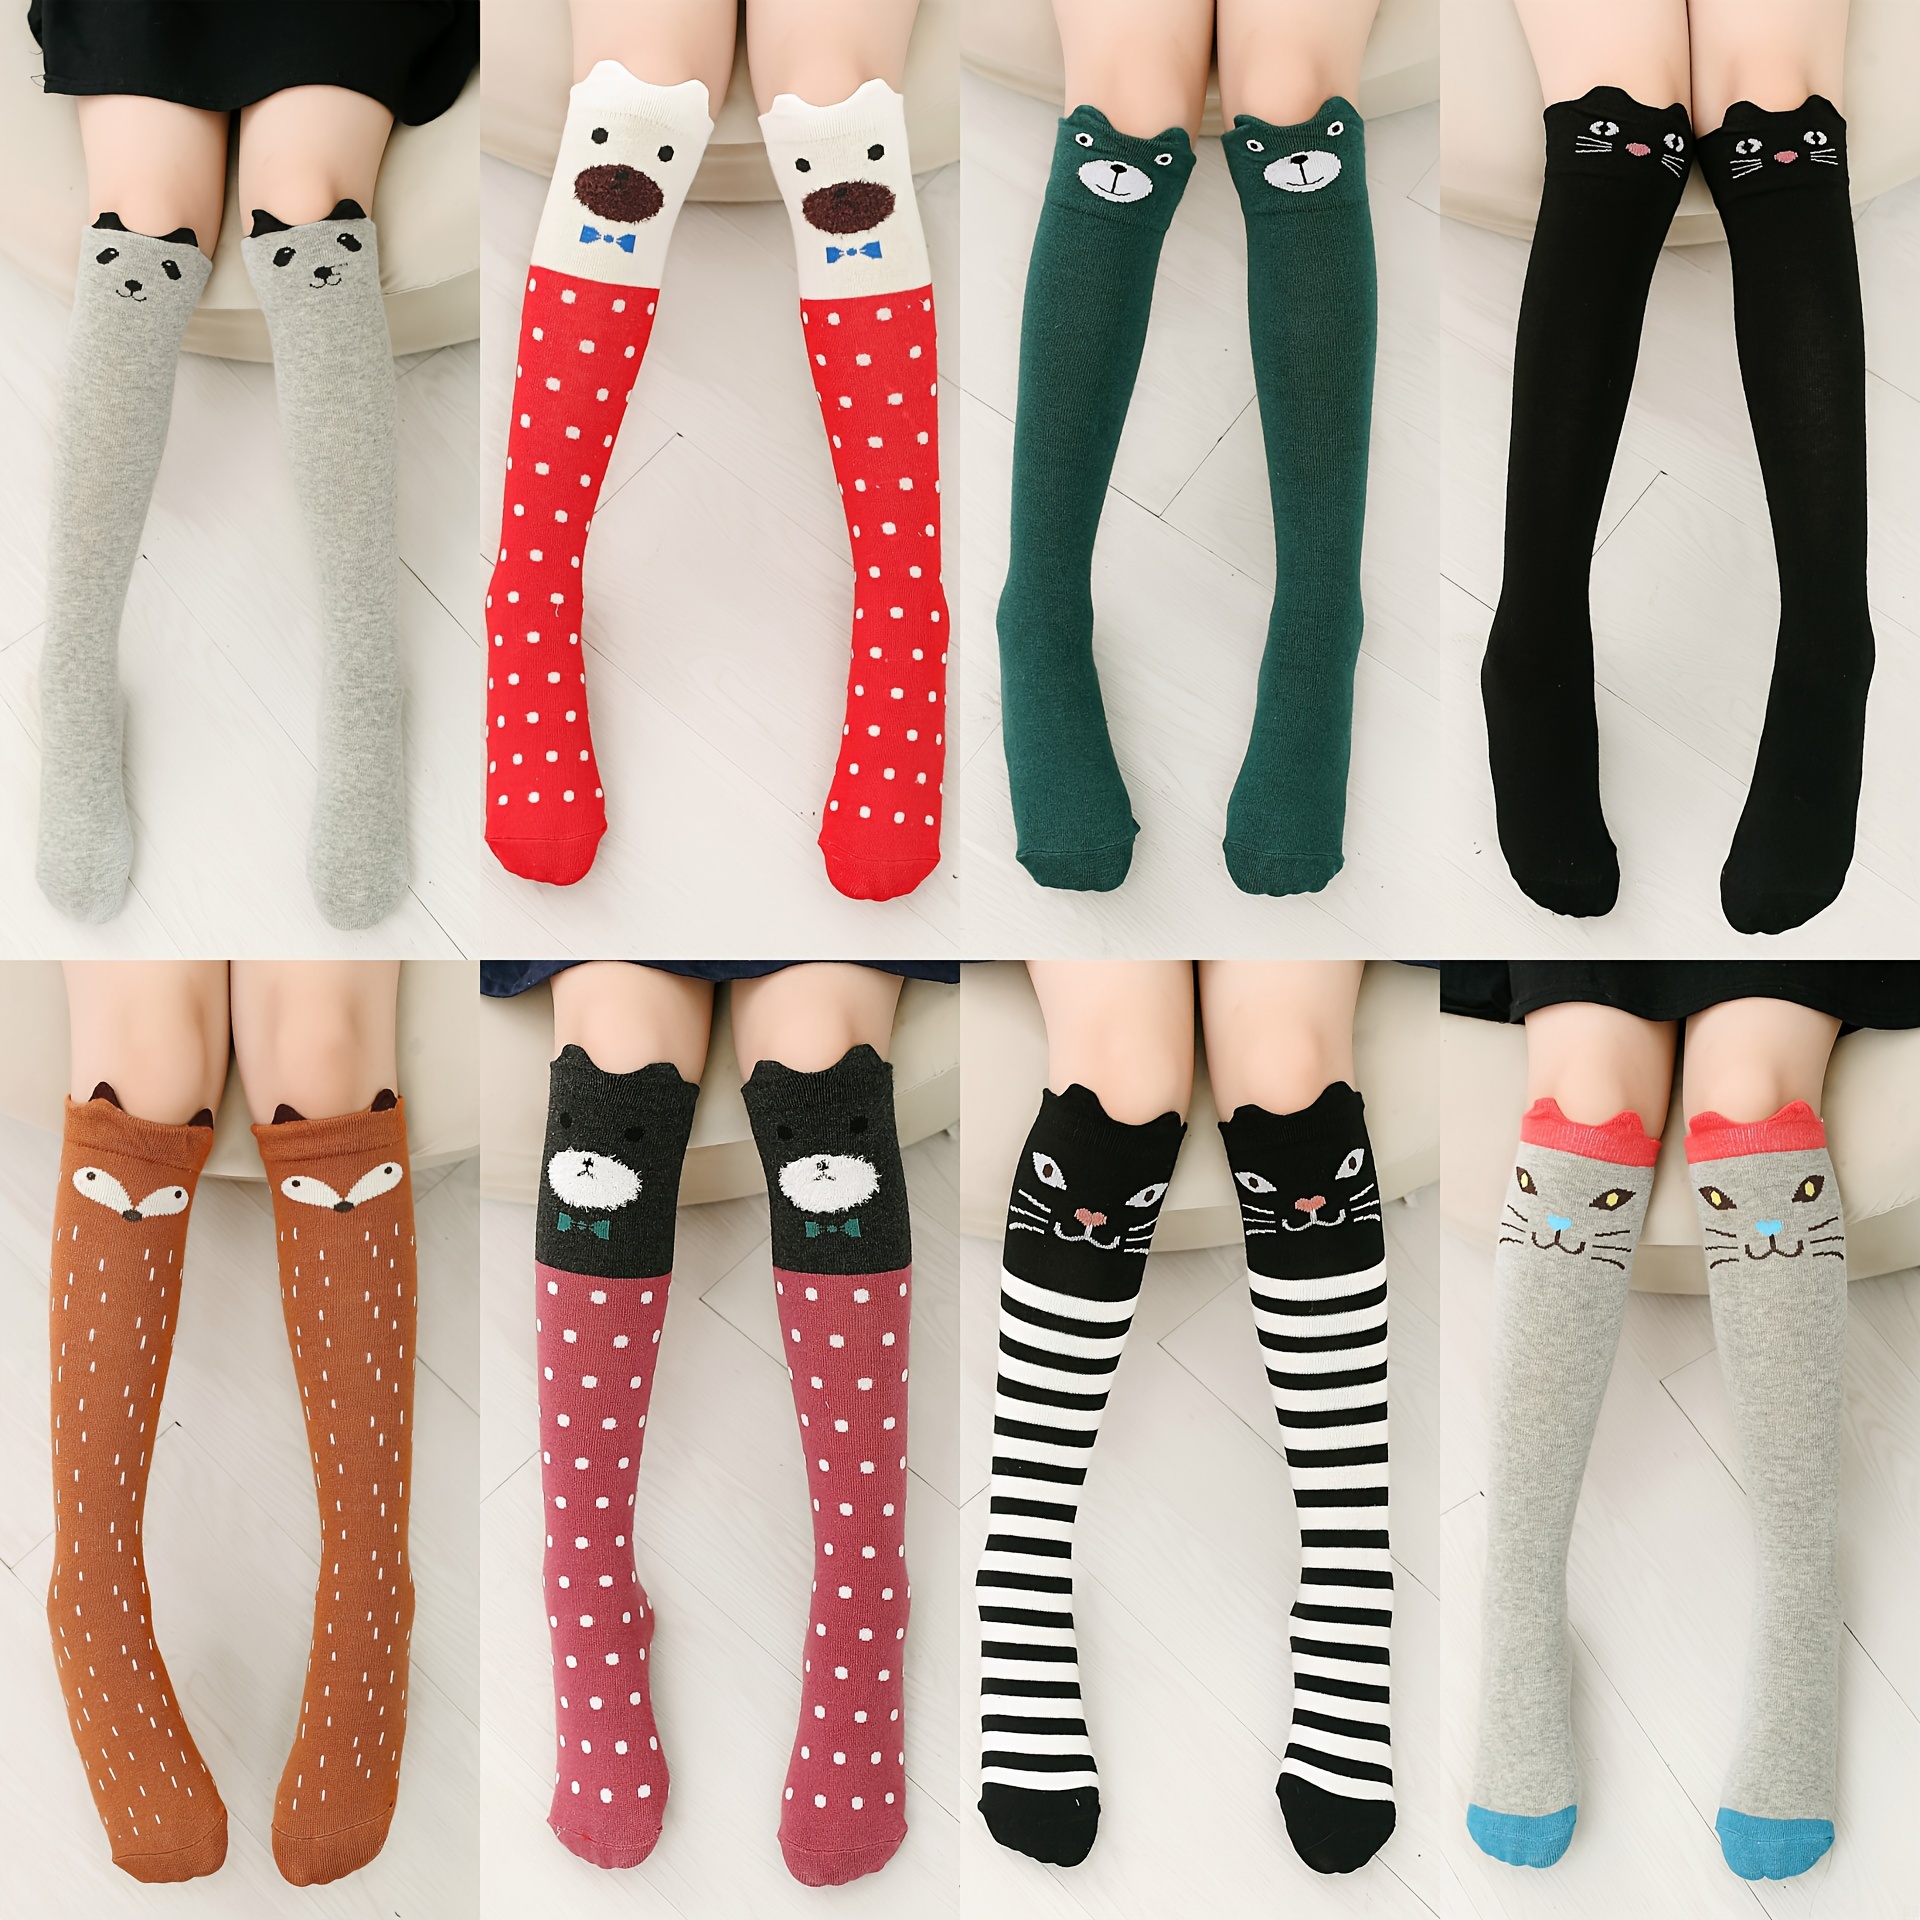 3pairs/student Over-the-knee Socks For Girls, Kids Dance Socks